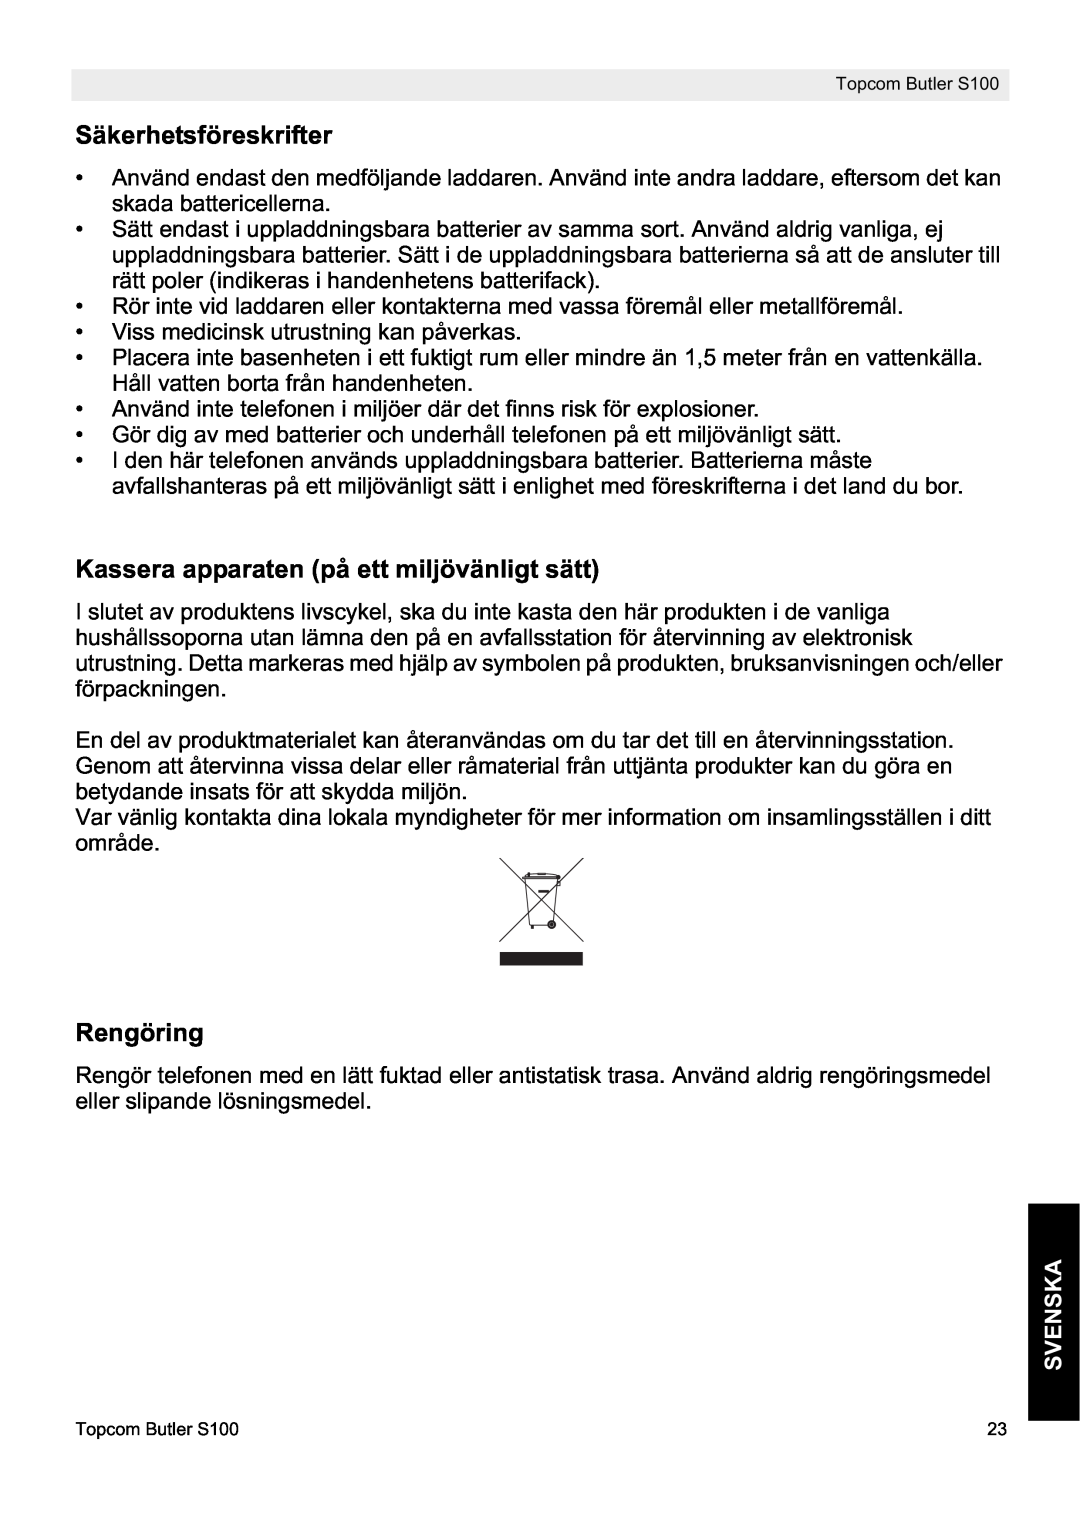 Topcom S100 manual do utilizador Säkerhetsföreskrifter, Kassera apparaten på ett miljövänligt sätt, Rengöring, Svenska 